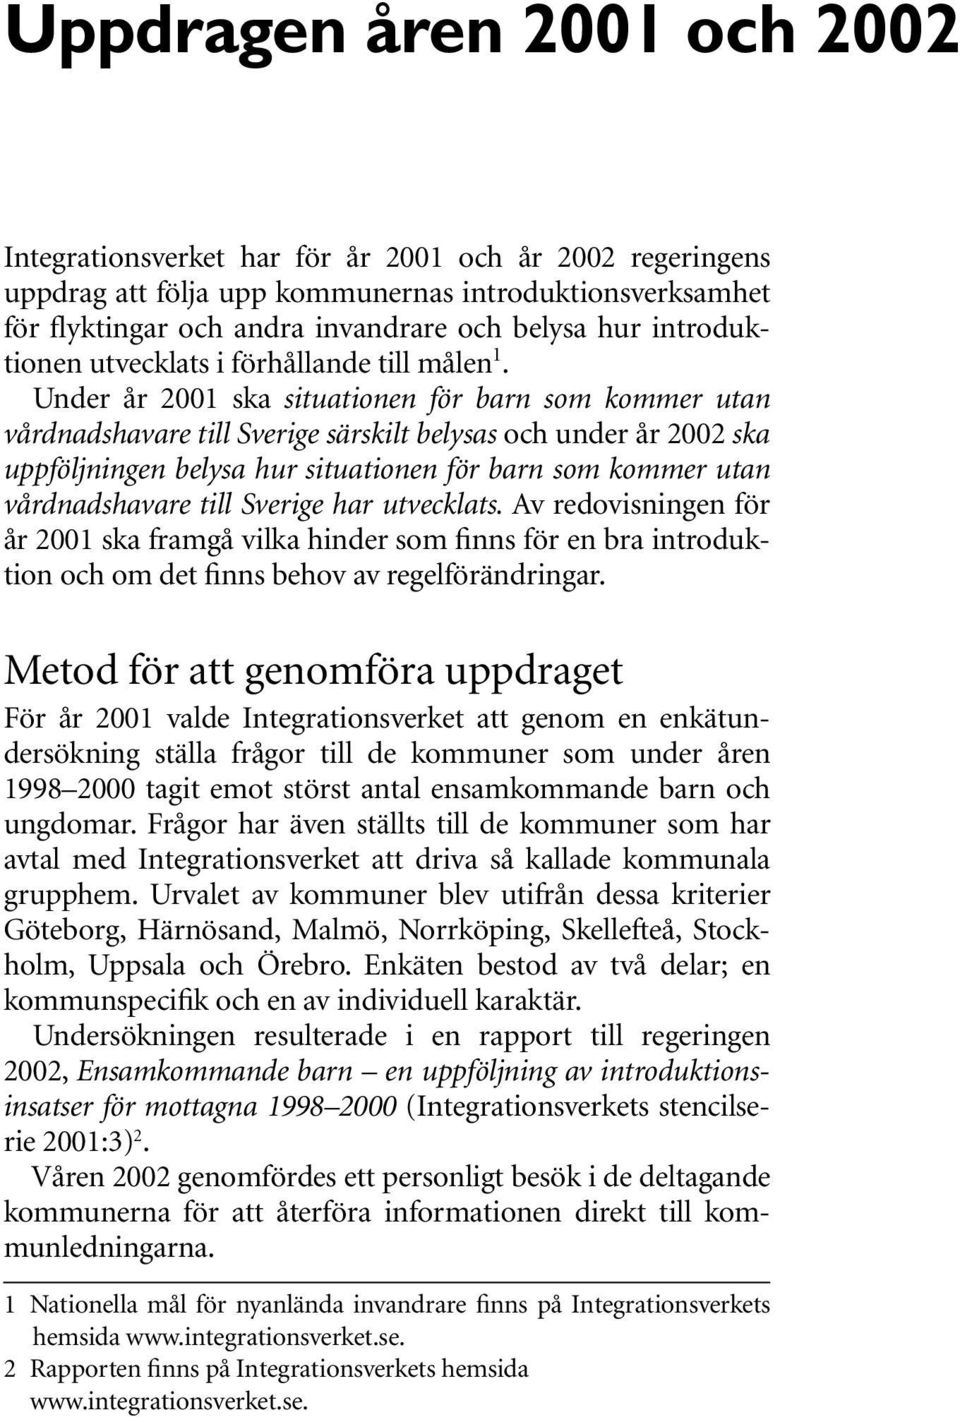 Under år 2001 ska situationen för barn som kommer utan vårdnadshavare till Sverige särskilt belysas och under år 2002 ska uppföljningen belysa hur situationen för barn som kommer utan vårdnadshavare